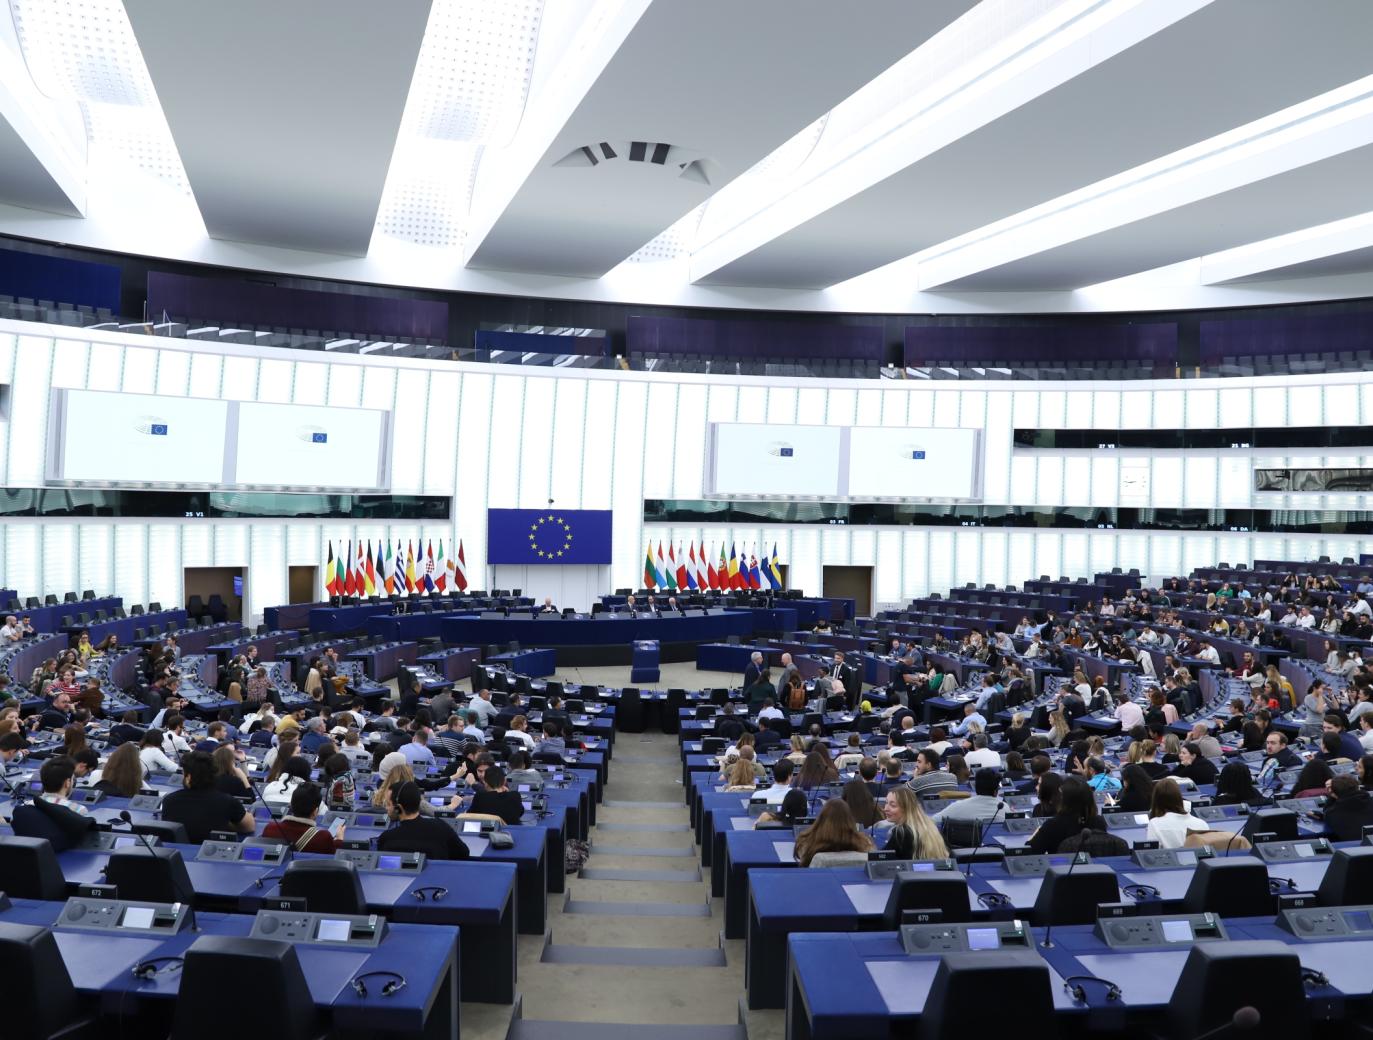 L’industrie 4.0 rassemble 500 étudiants de l’EM Strasbourg au Parlement européen - EM Strasbourg